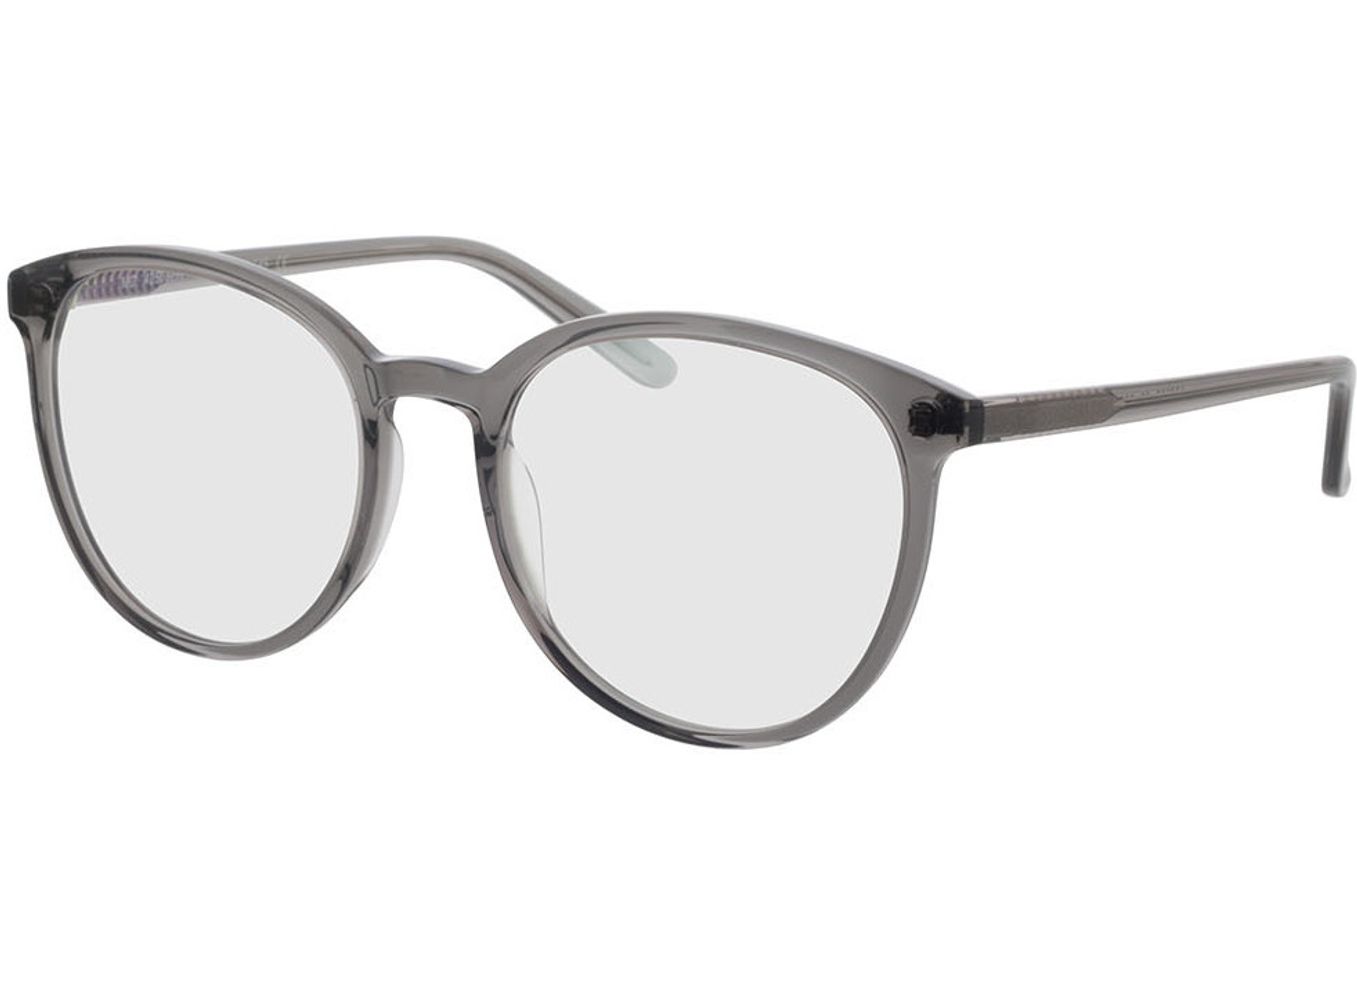 New York - grau Gleitsichtbrille, Vollrand, Rund von Brille24 Collection